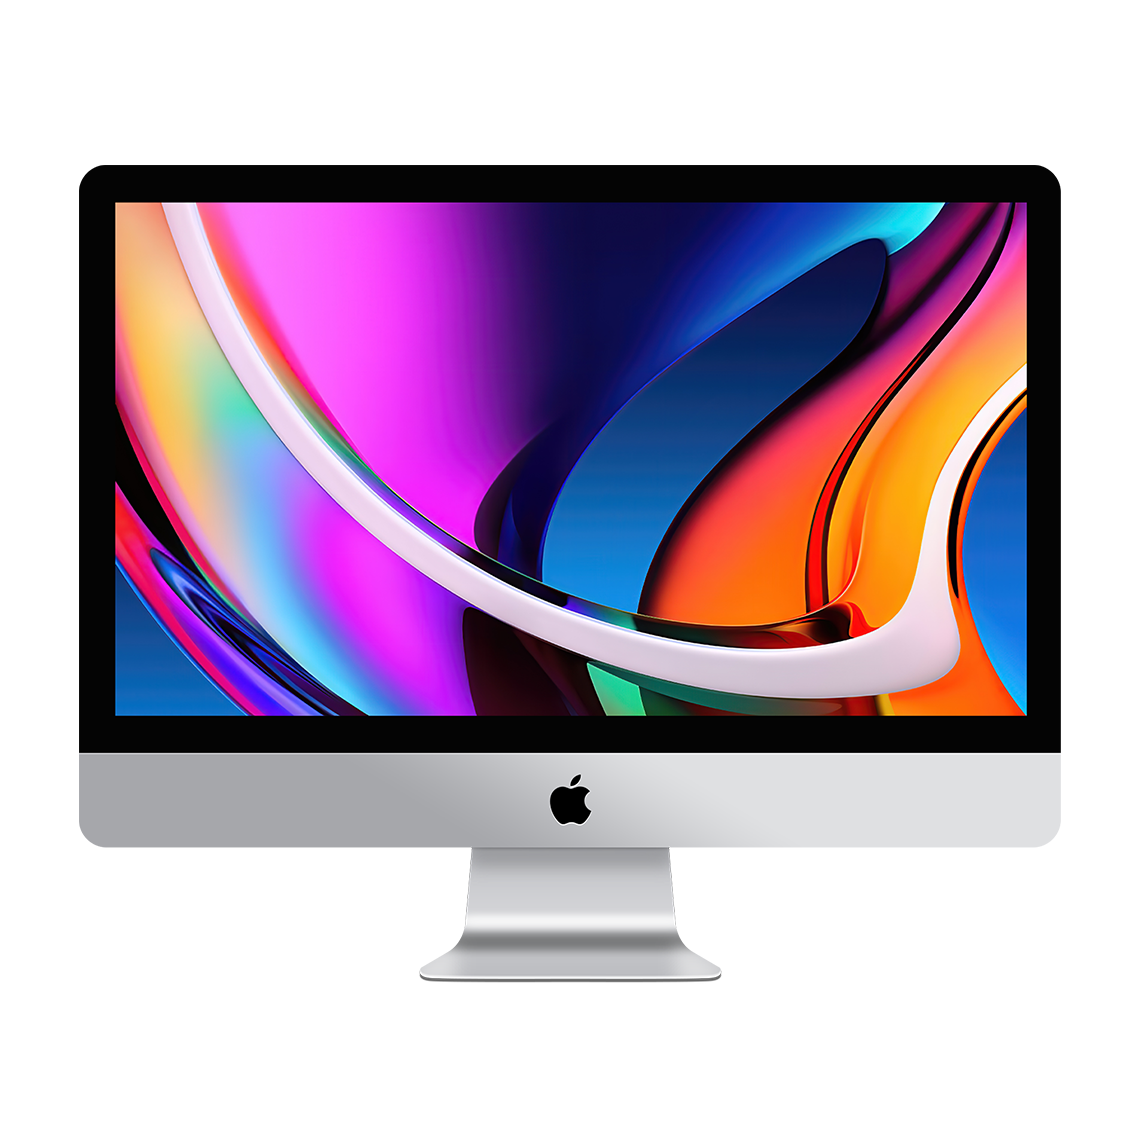 2020 iMac 27-inch 5K - Intel Core i7, 32GB, 1TB Flash, Radeon Pro 5500XT 8GB, Grade A